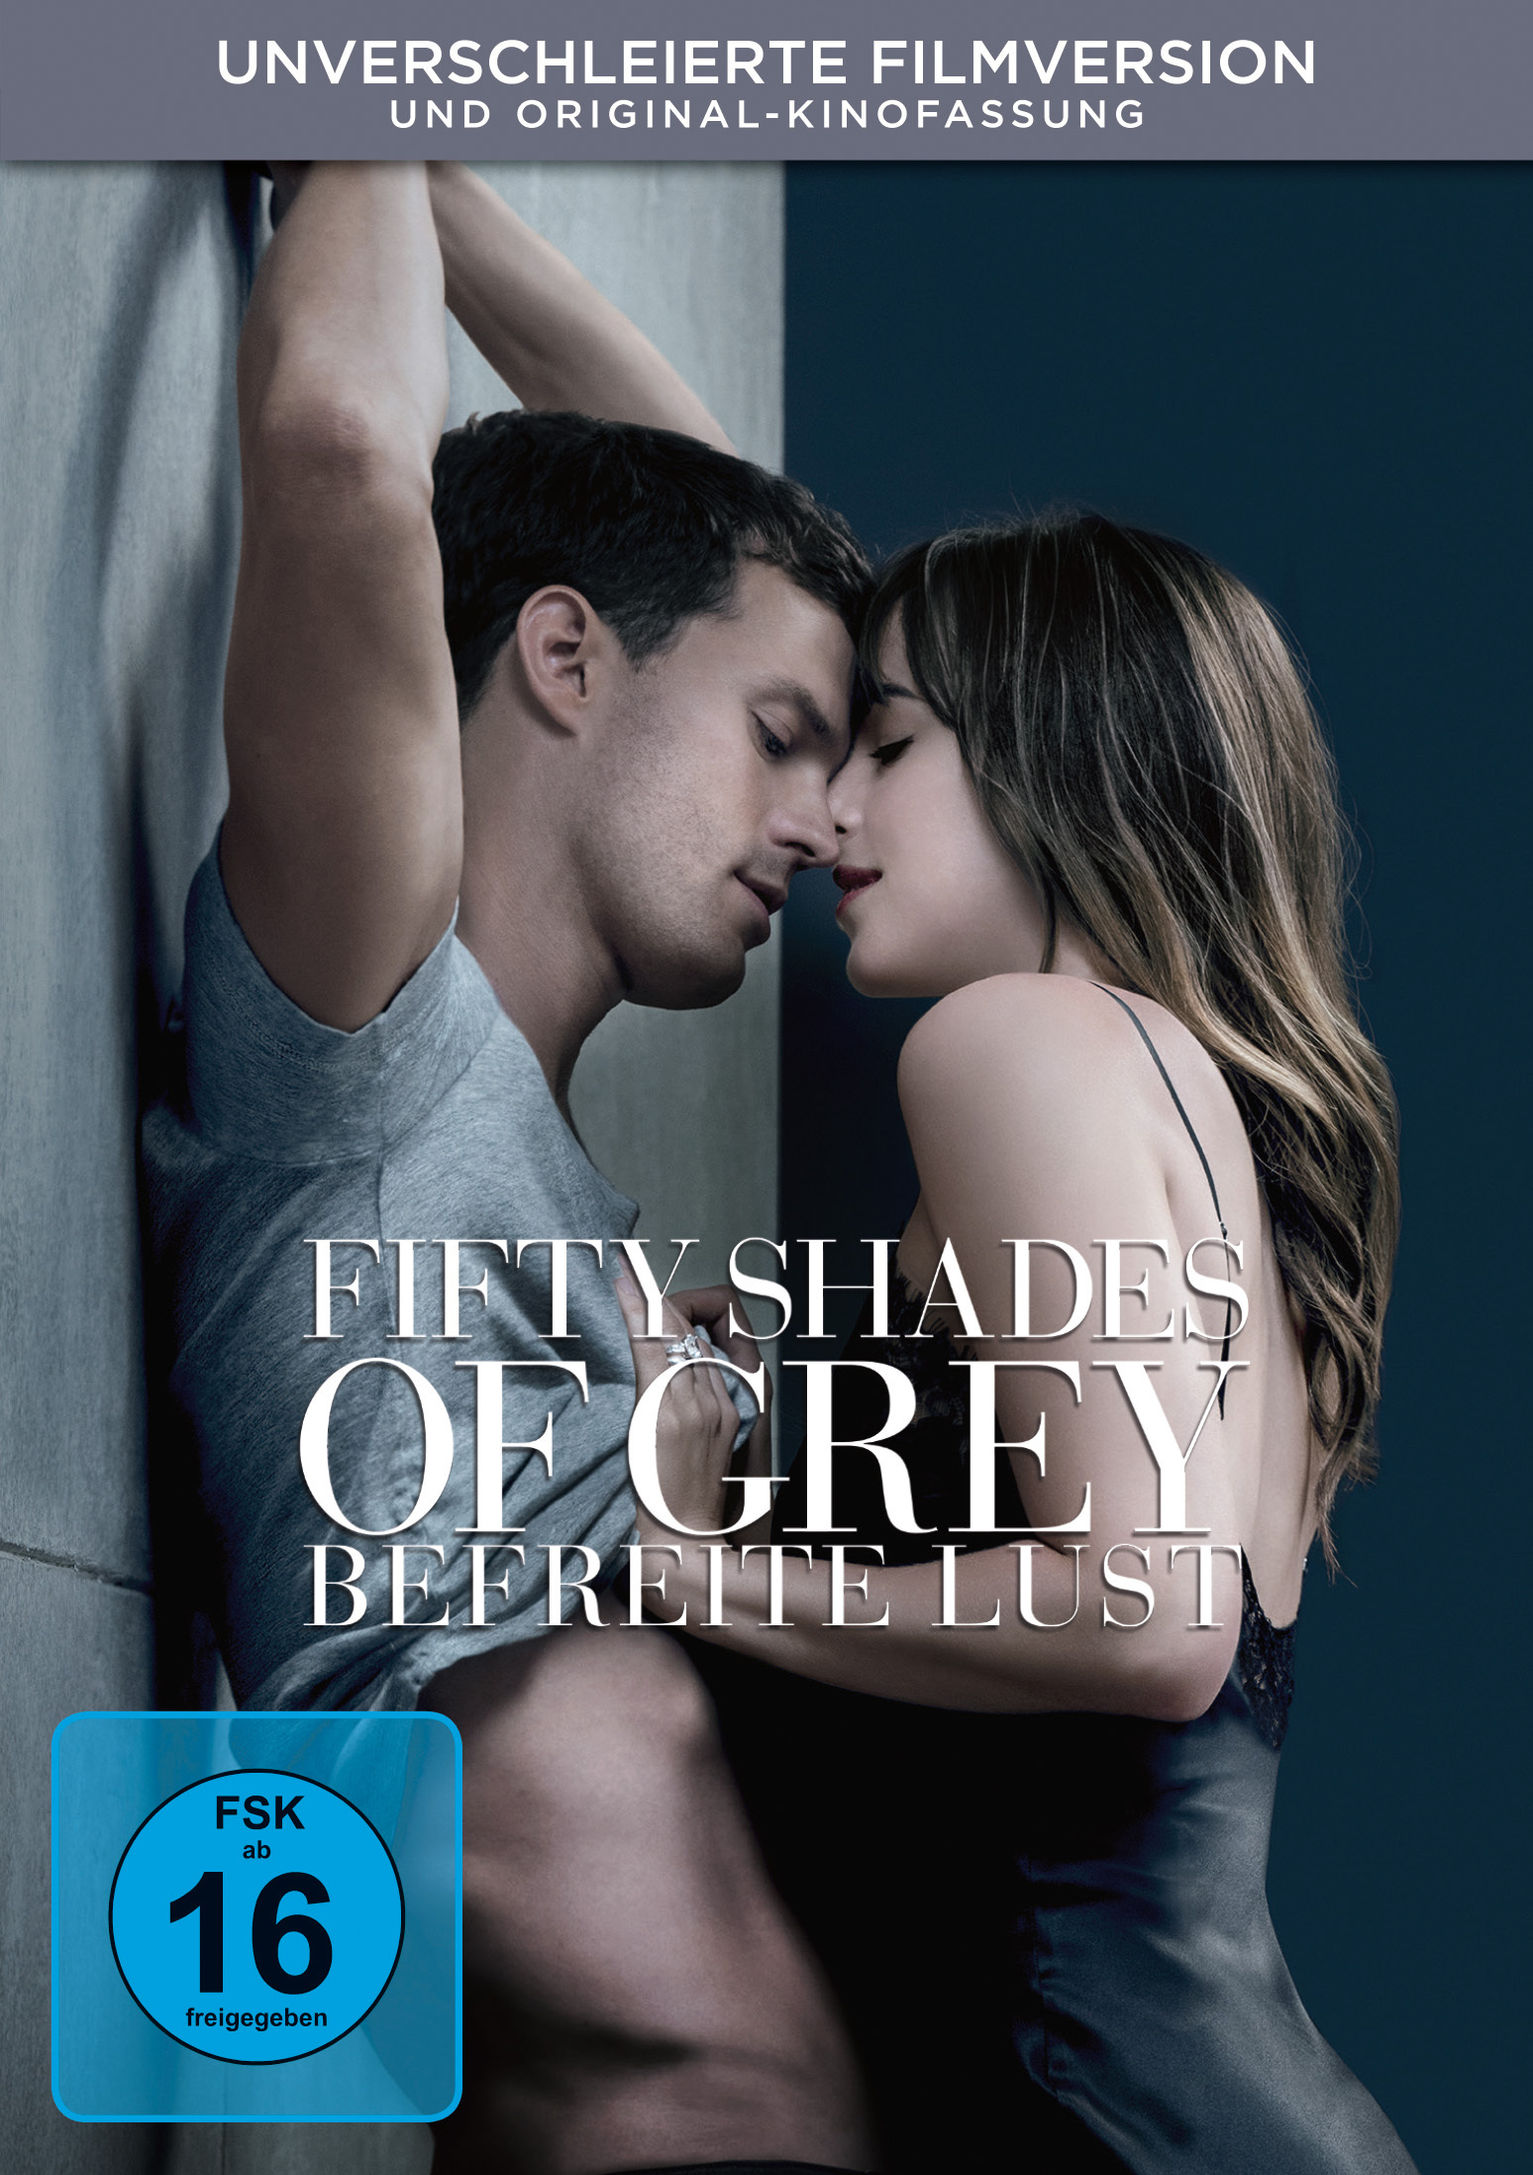 Fifty Shades of Grey 3 - Befreite Lust DVD | Weltbild.de